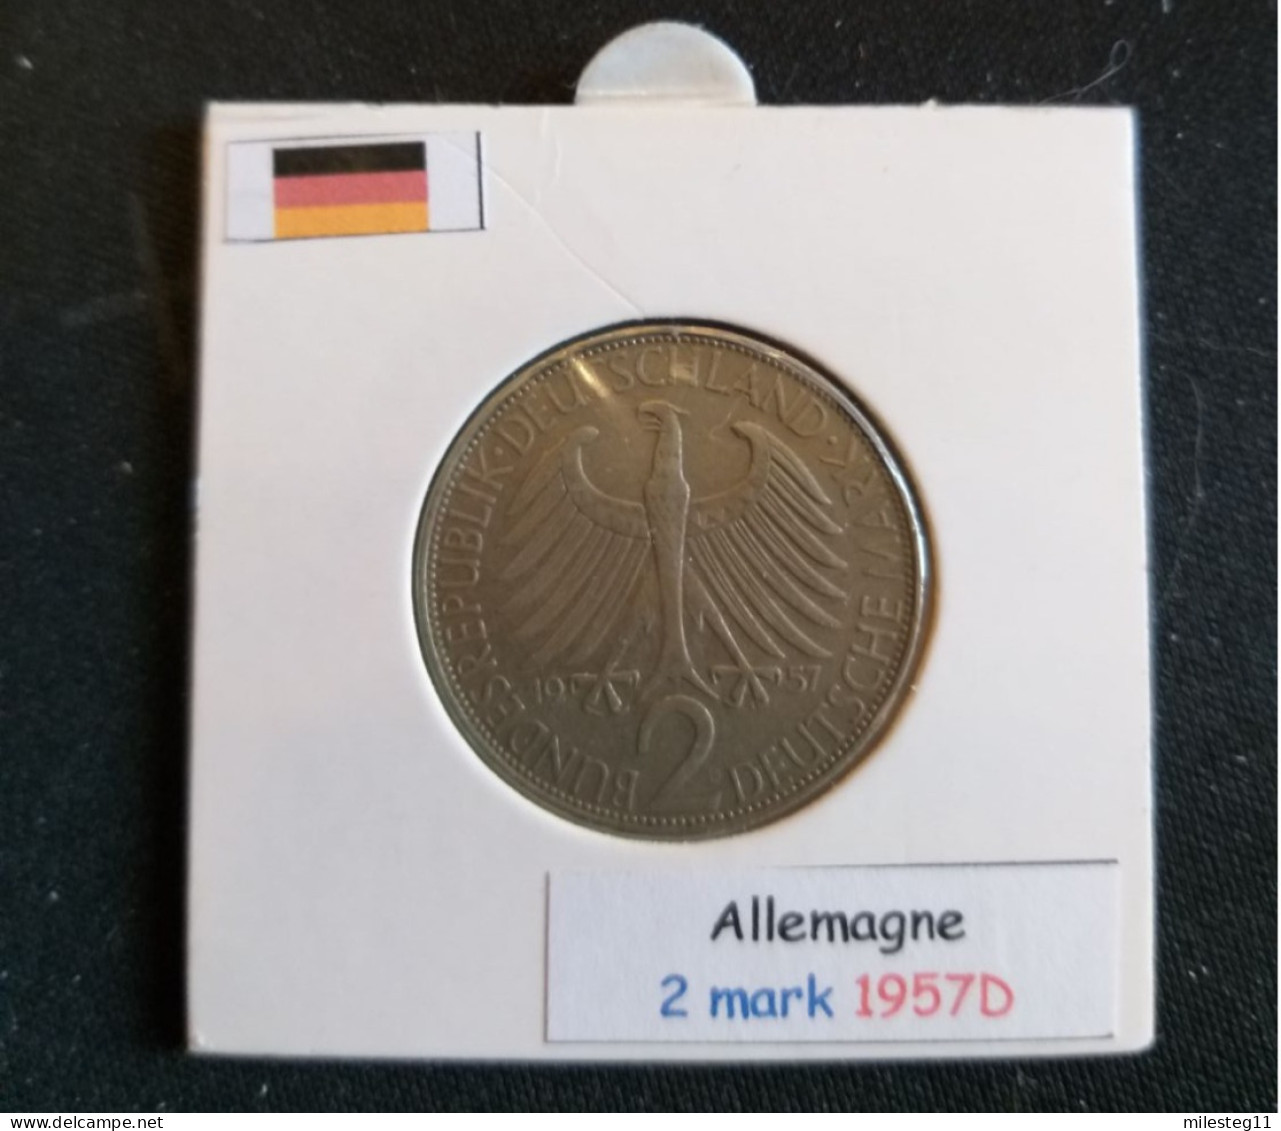 Allemagne 2 Mark 1957D (Max Planck) - 2 Mark